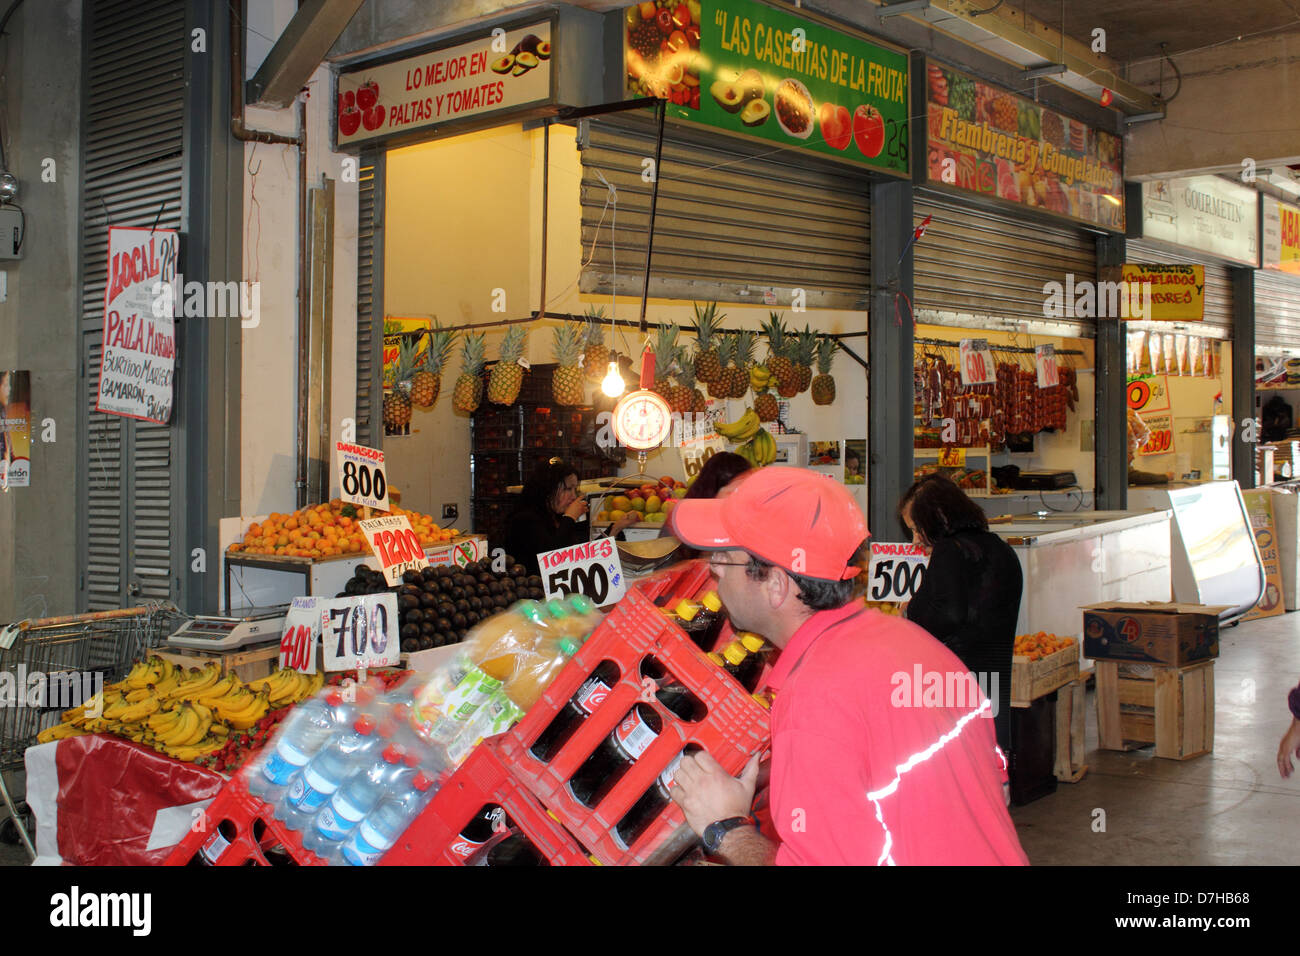 Santiago de Chile fruit market Stock Photo